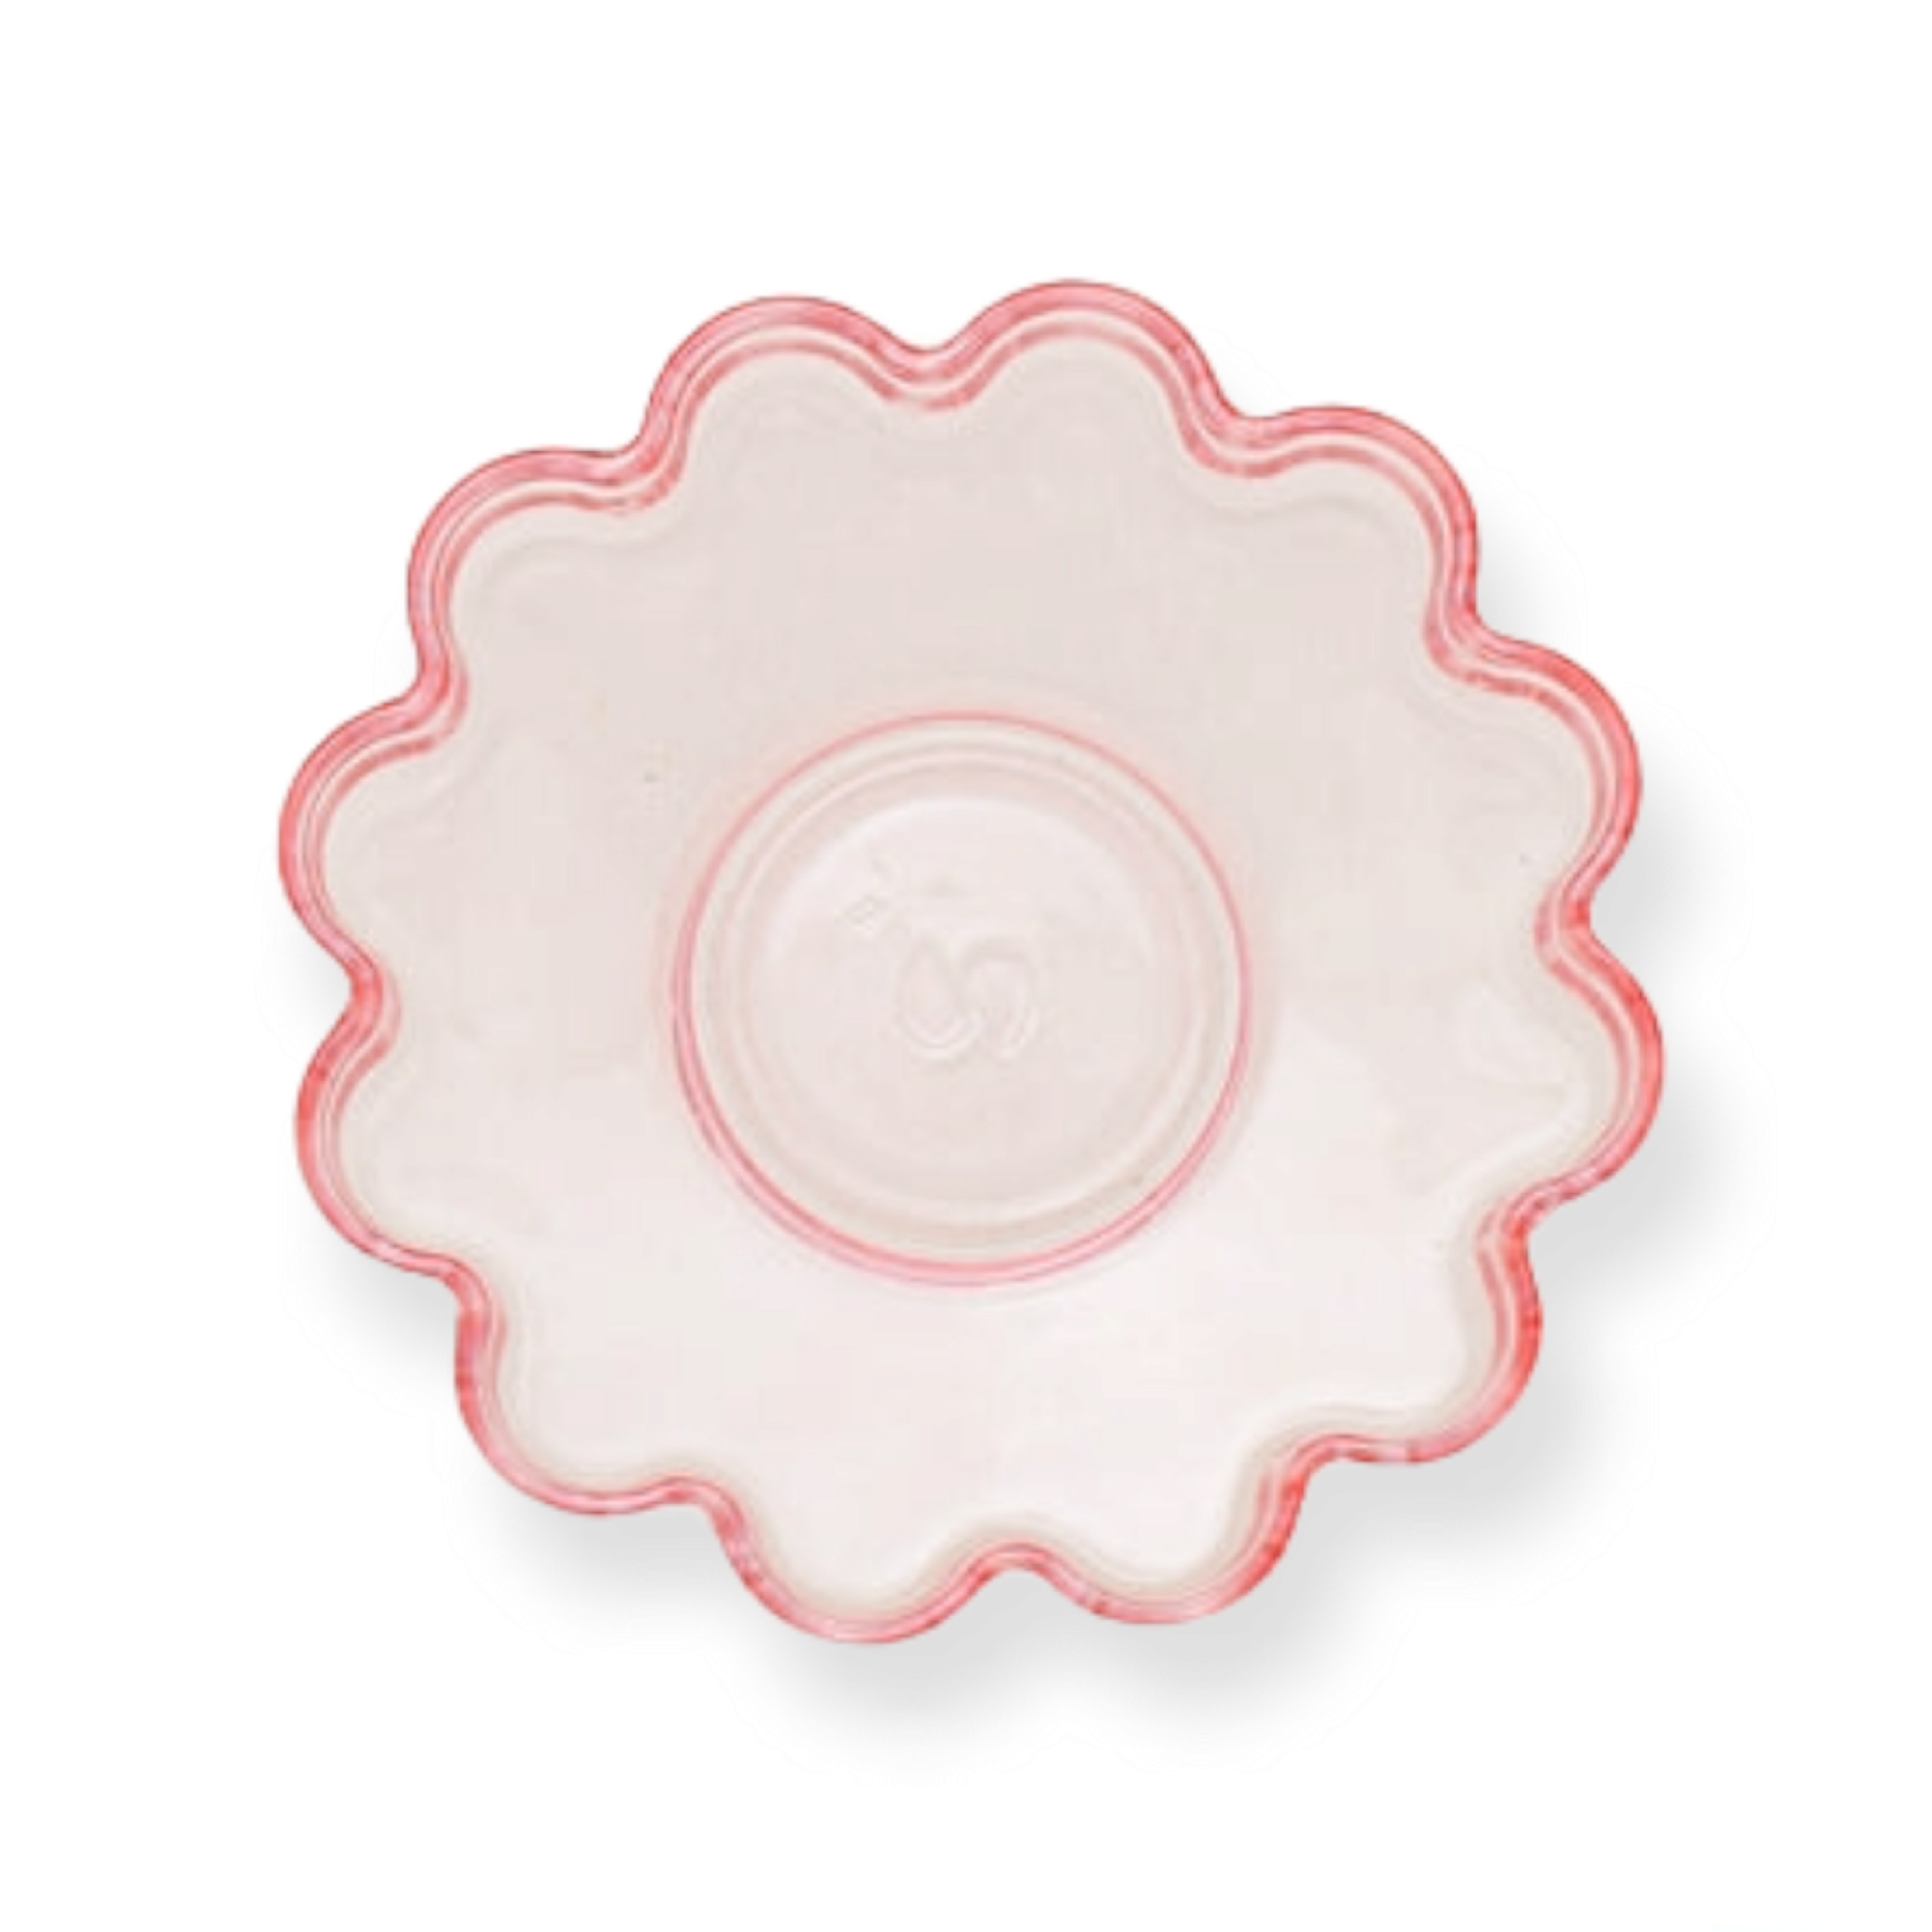 Pasabahce Turkish Tea Glass Saucer Pink Round